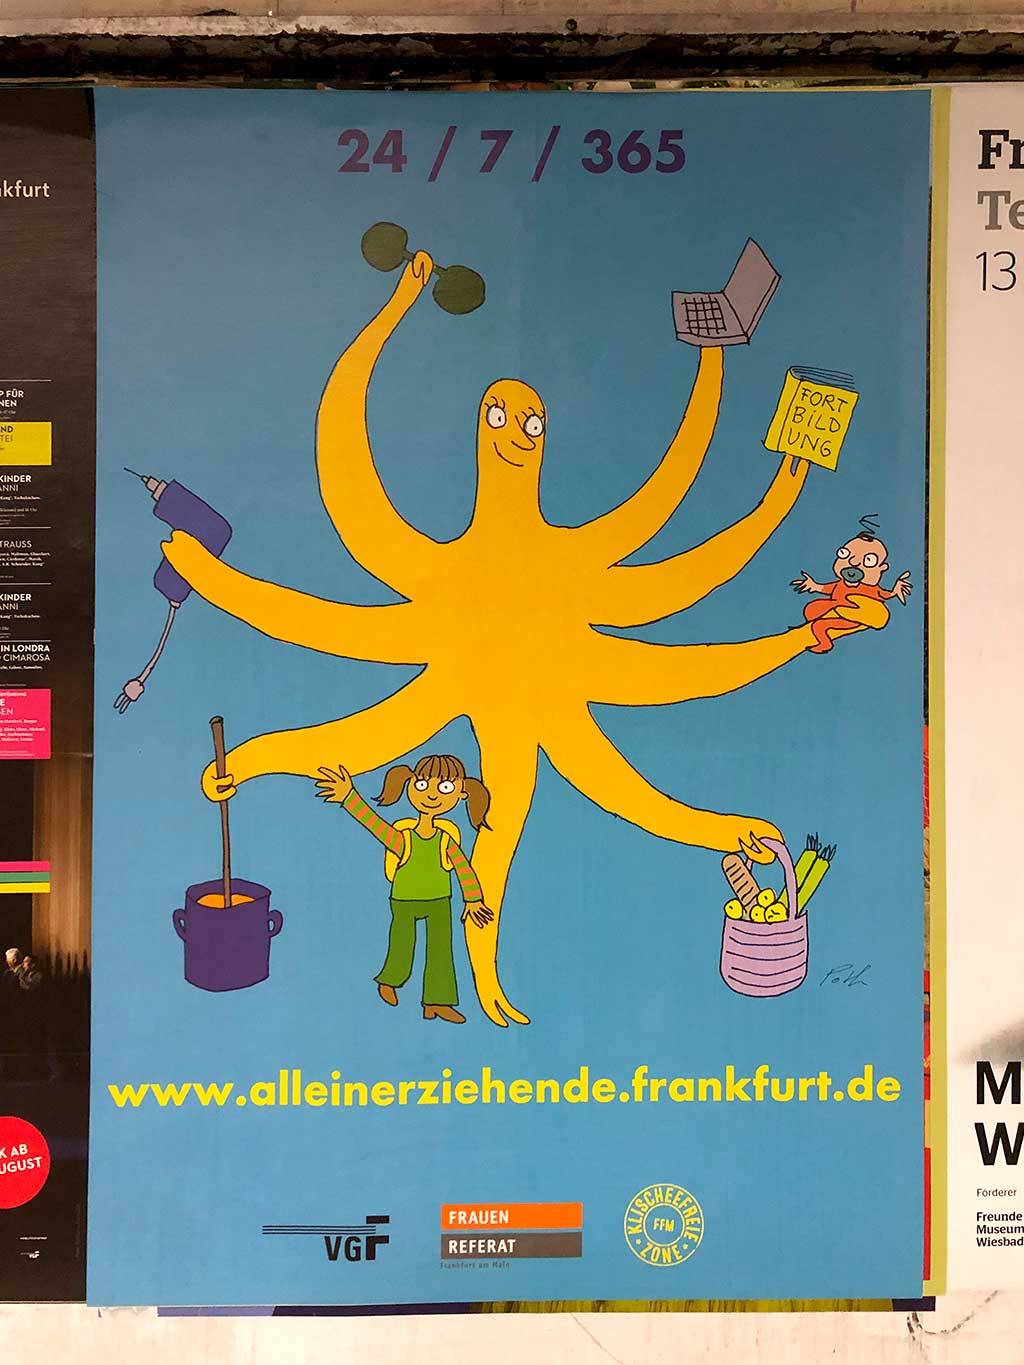 Plakat zum Thema Alleinerziehende in Frankfurt mit Bild von Leonore Poth